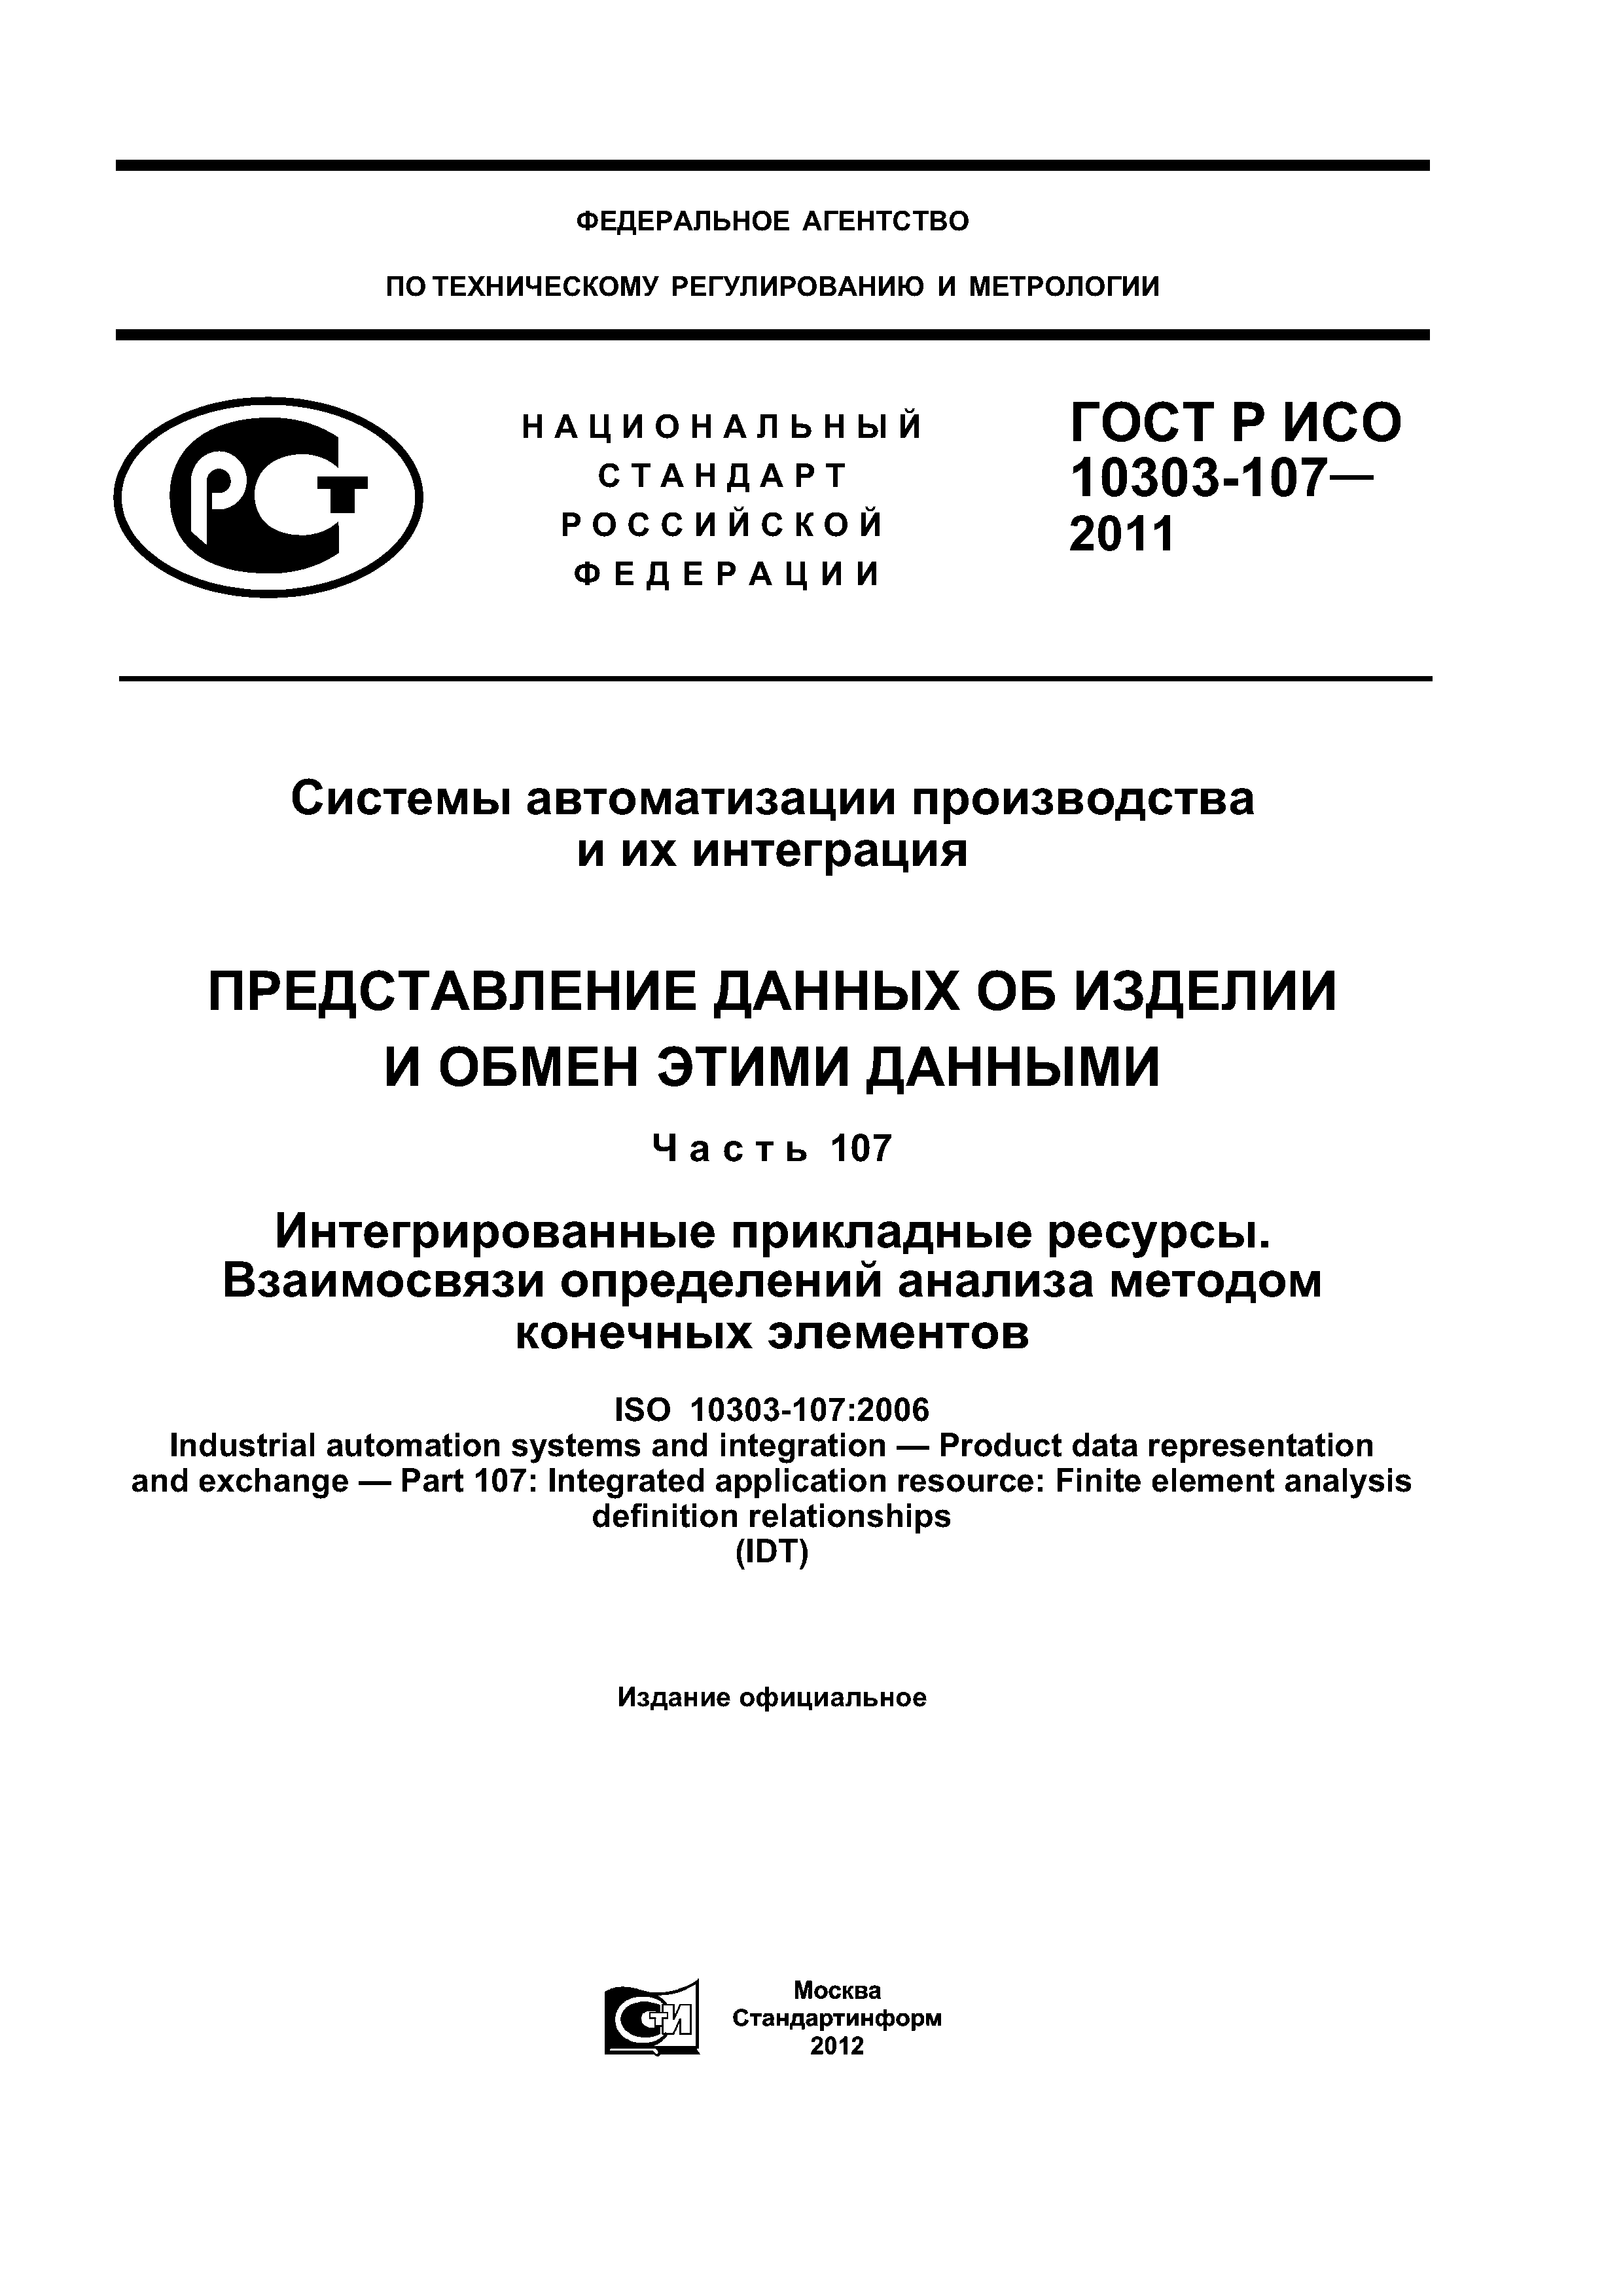 ГОСТ Р ИСО 10303-107-2011